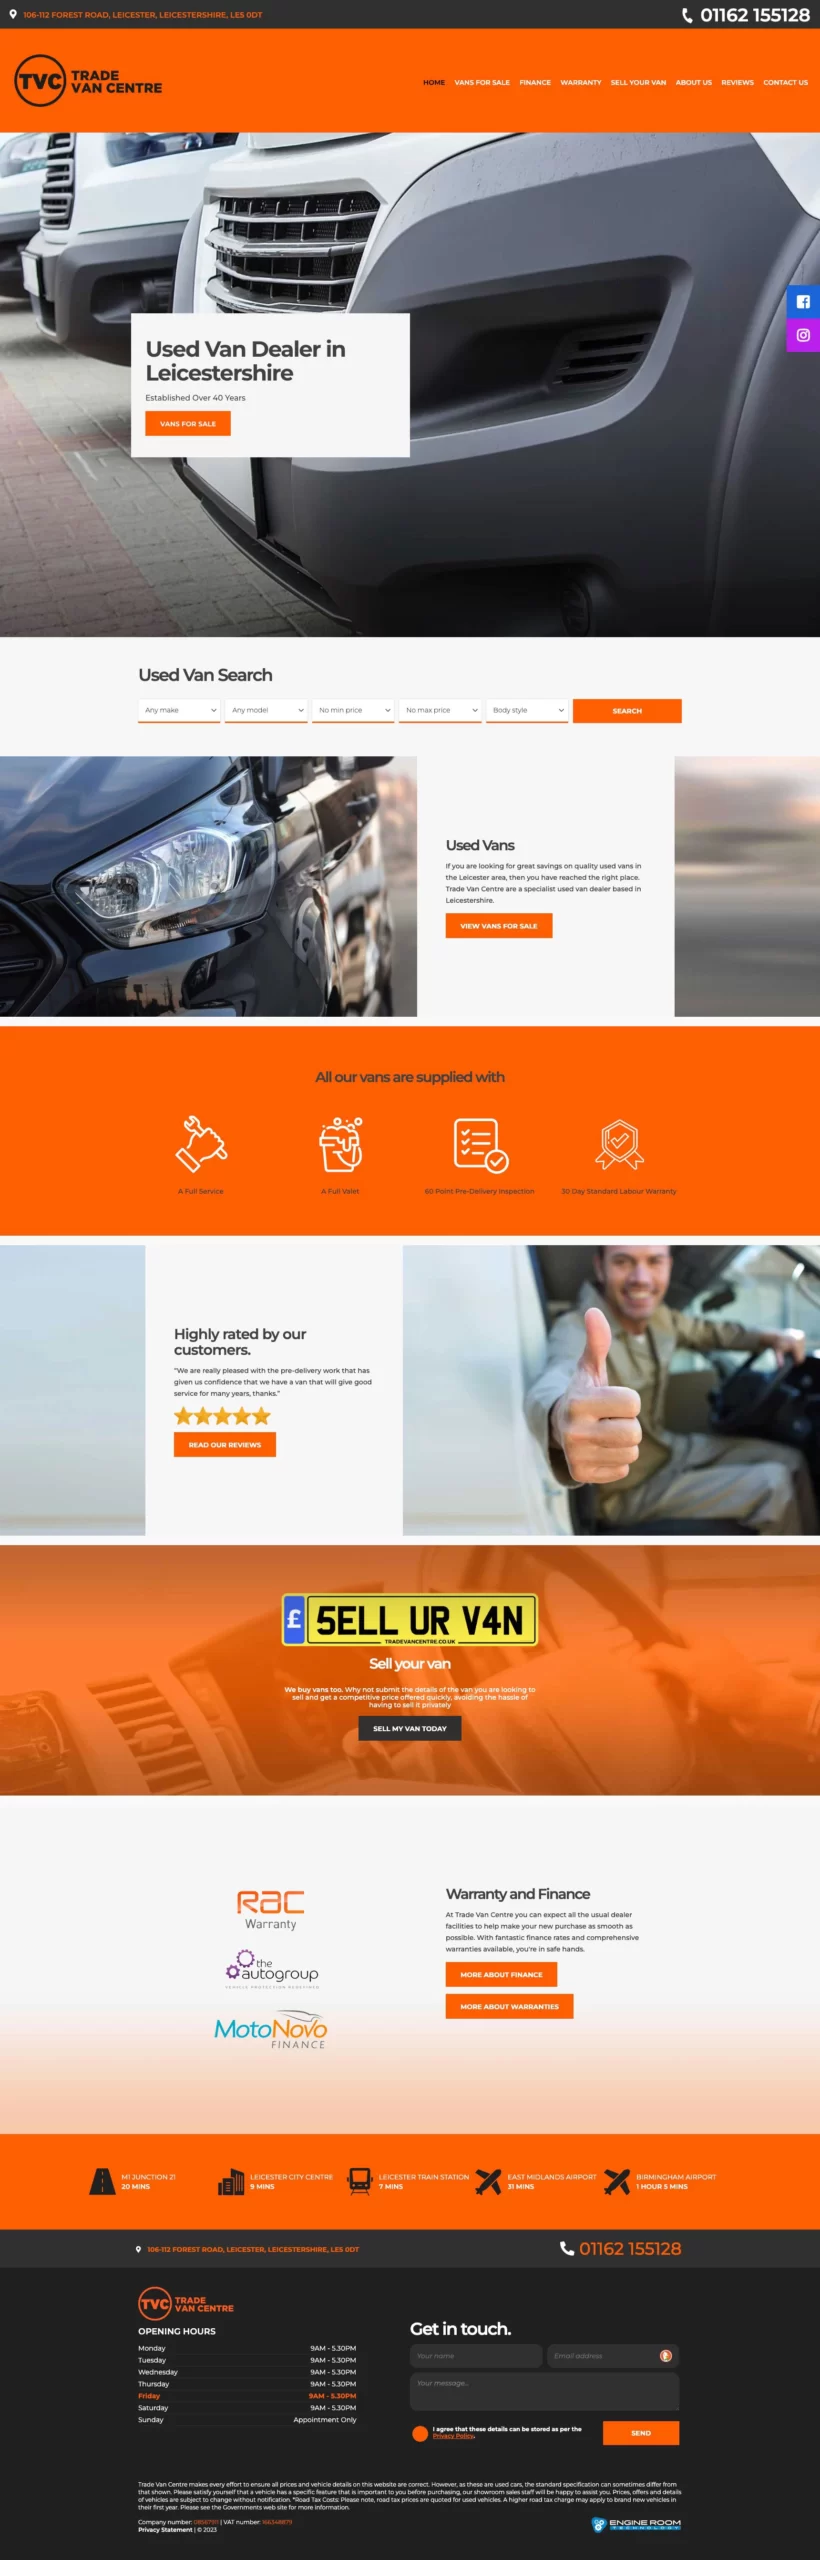 Van Dealer Website Design